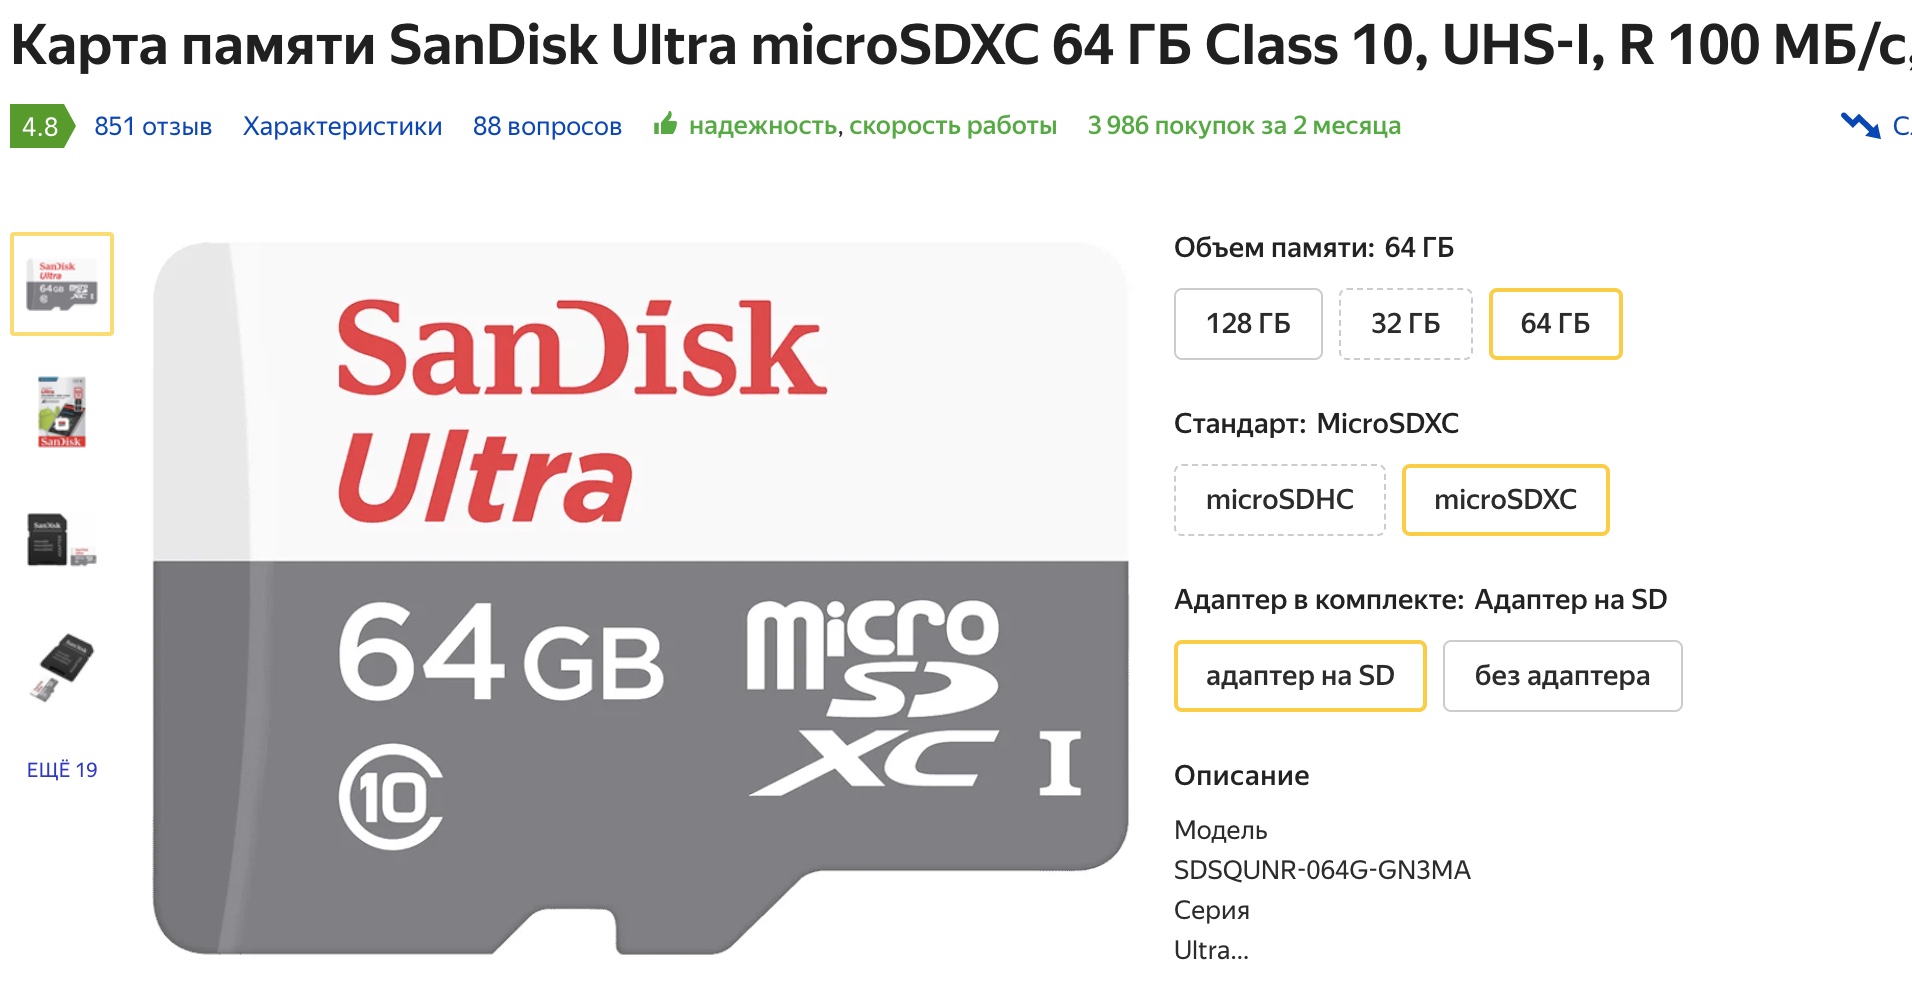 Чем отличаются карты microSD, microSDHC и microSDXC?